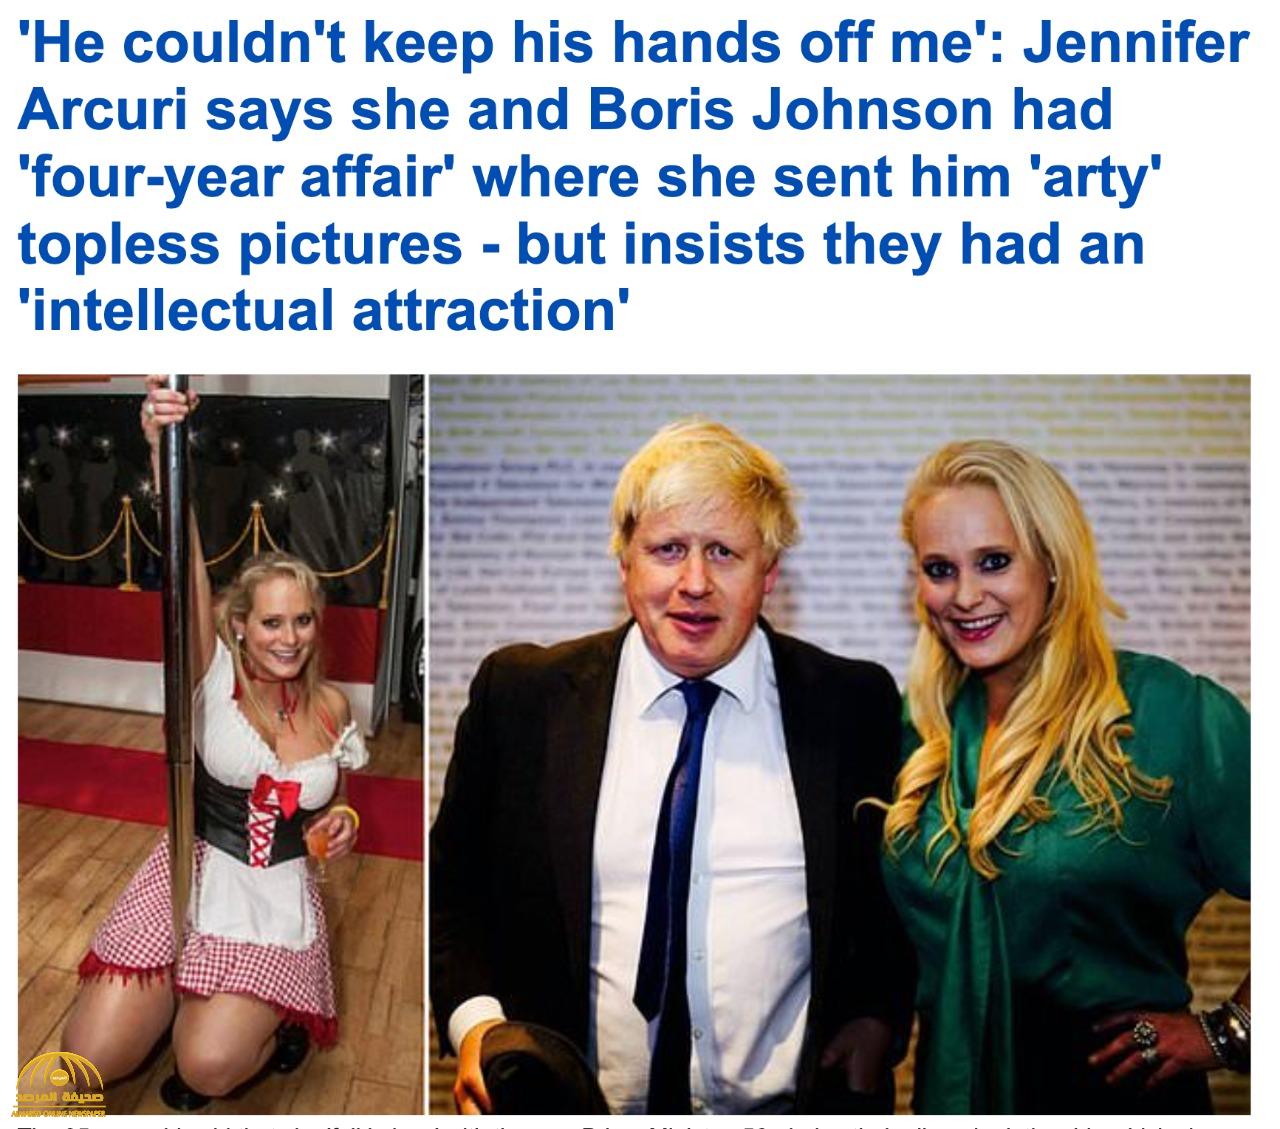 بالصور .. سيدة أعمال تكشف عن فضيحة علاقتها الغرامية برئيس وزراء بريطانيا  وخيانته لزوجته